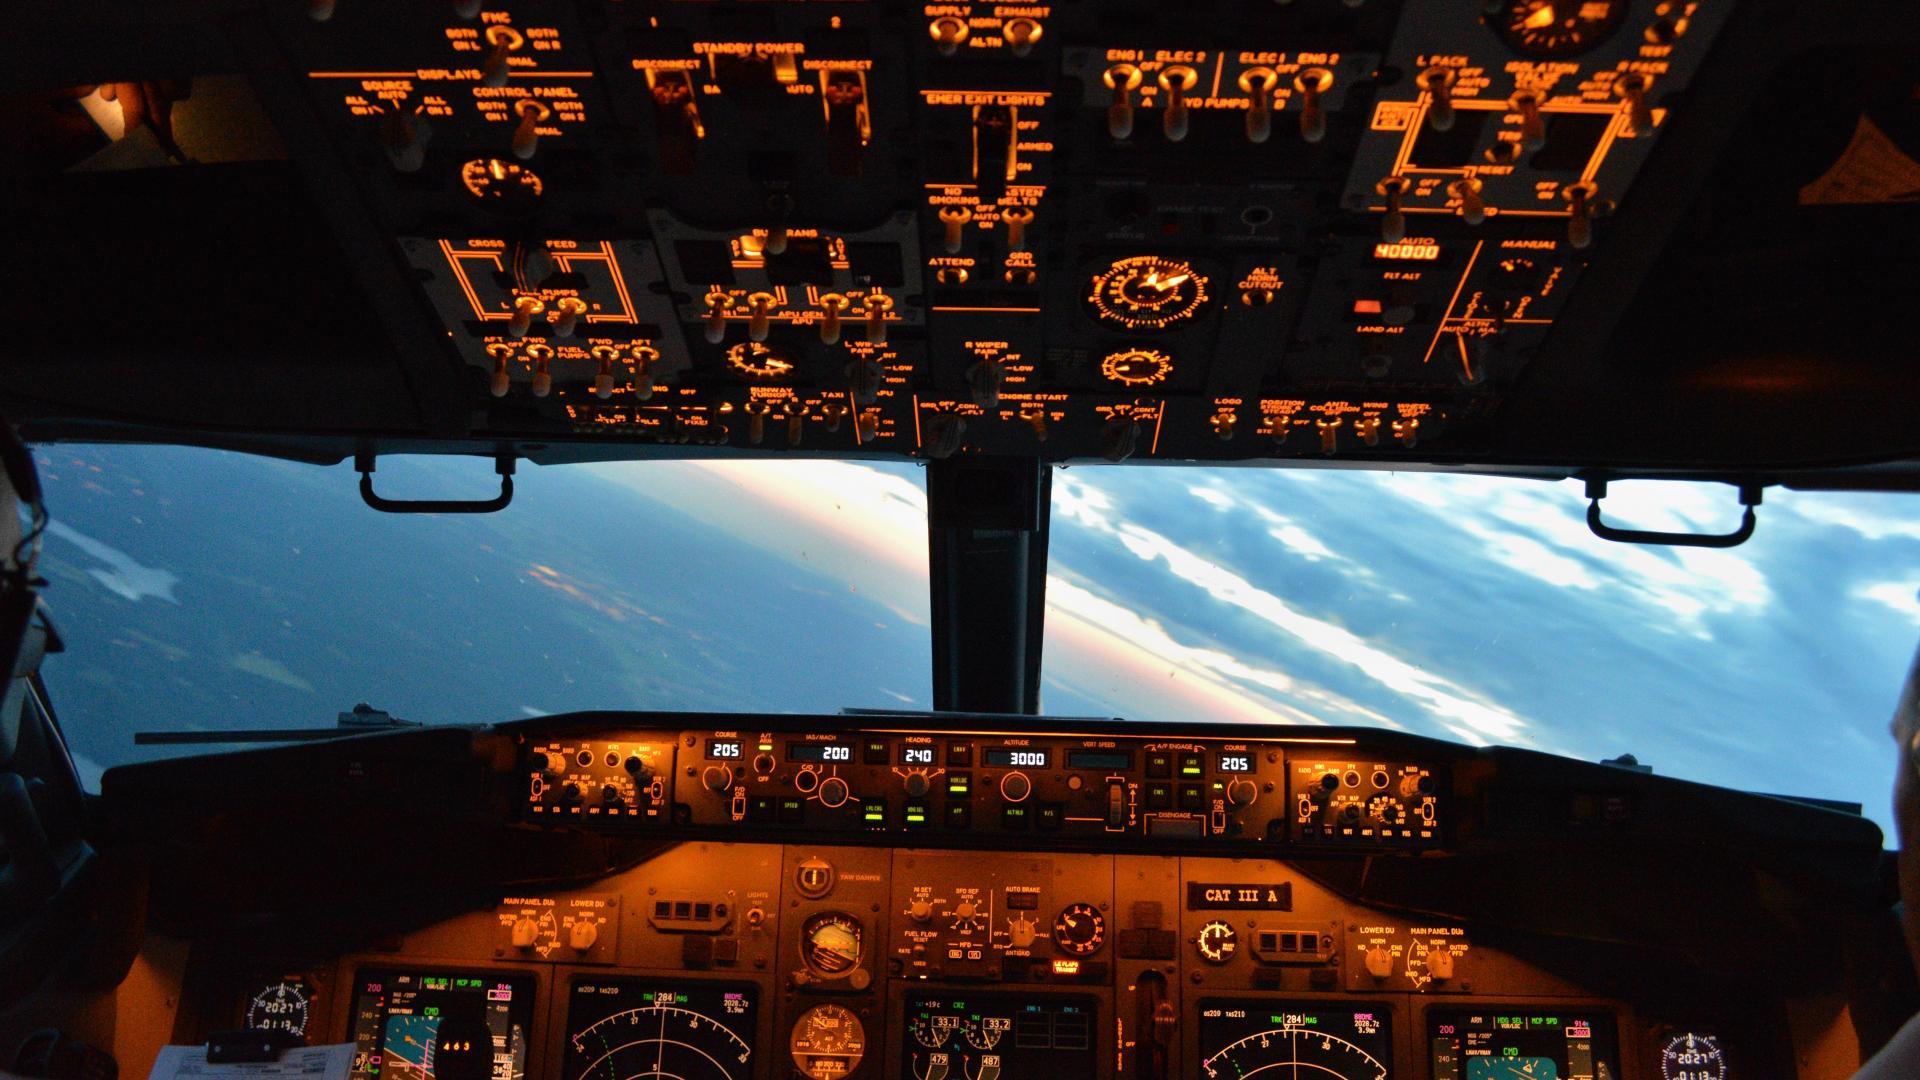 Boeing 737 Cockpit Wallpaper. Cockpit, Boeing 737 cockpit, Pilot seats